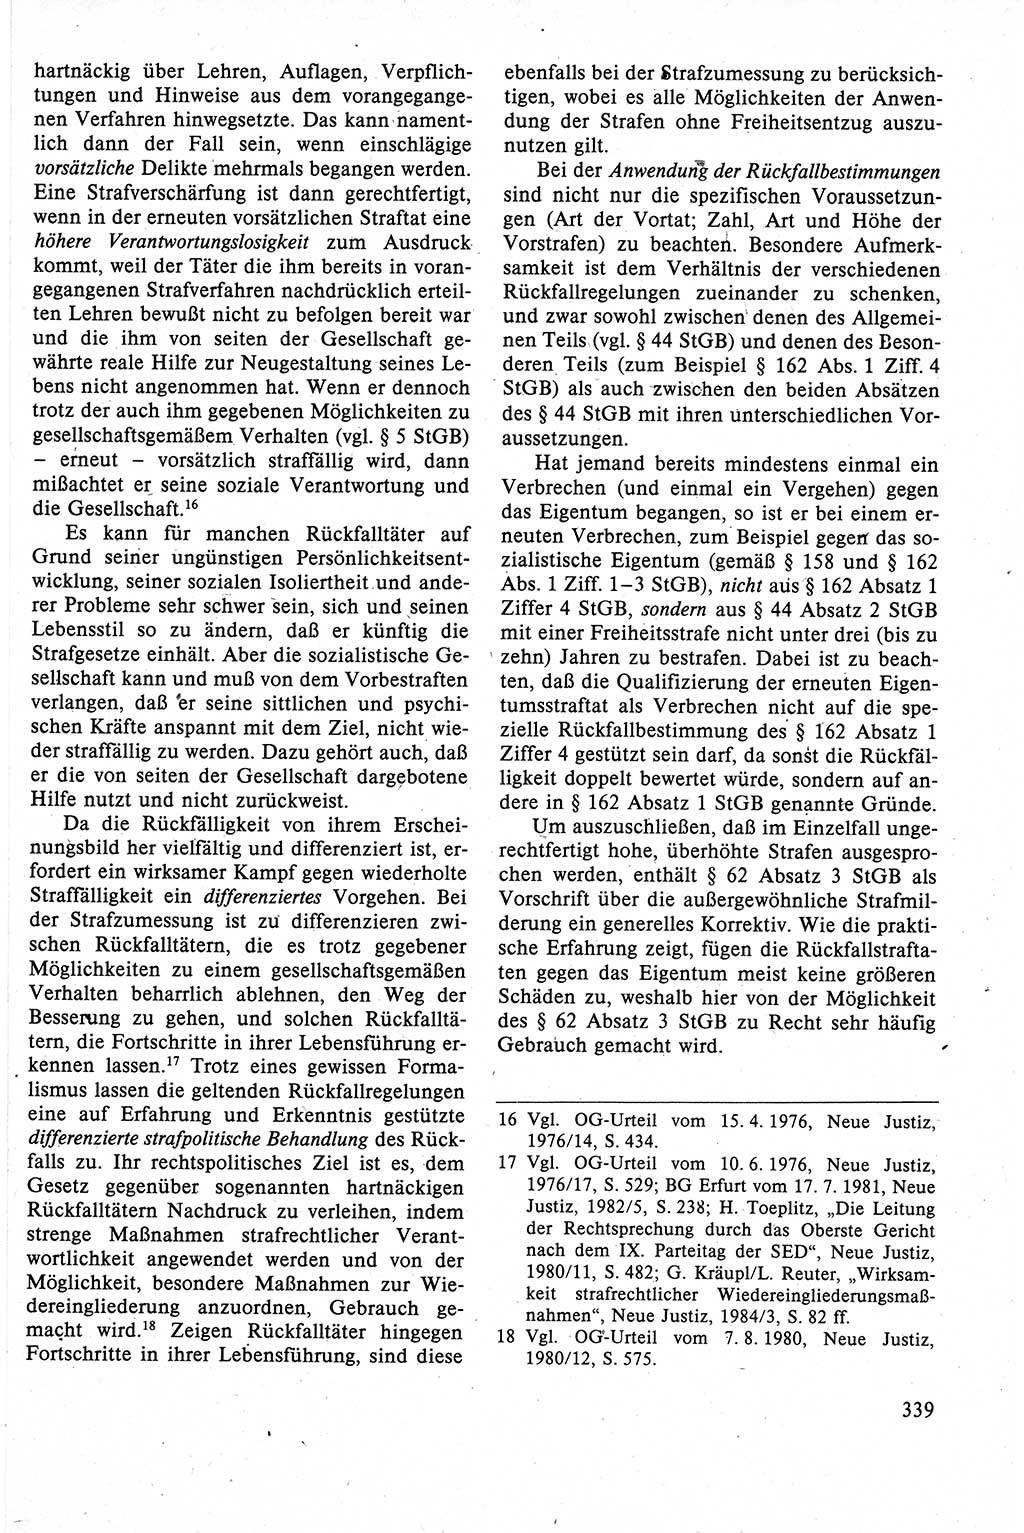 Strafrecht der DDR (Deutsche Demokratische Republik), Lehrbuch 1988, Seite 339 (Strafr. DDR Lb. 1988, S. 339)